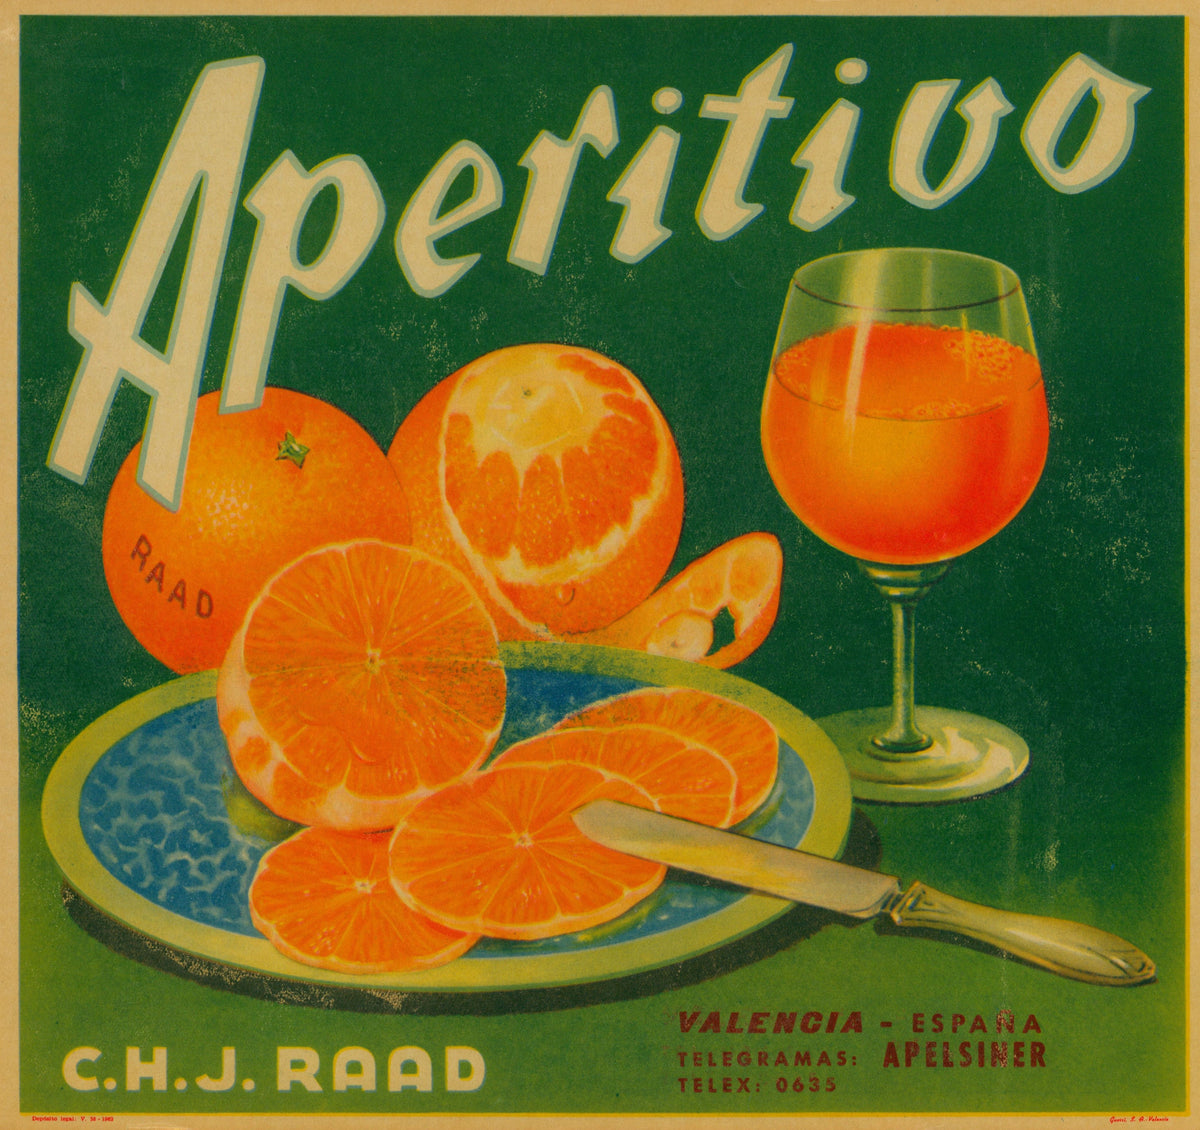 Aperitivo- Spanish Crate Label - Authentic Vintage Antique Print